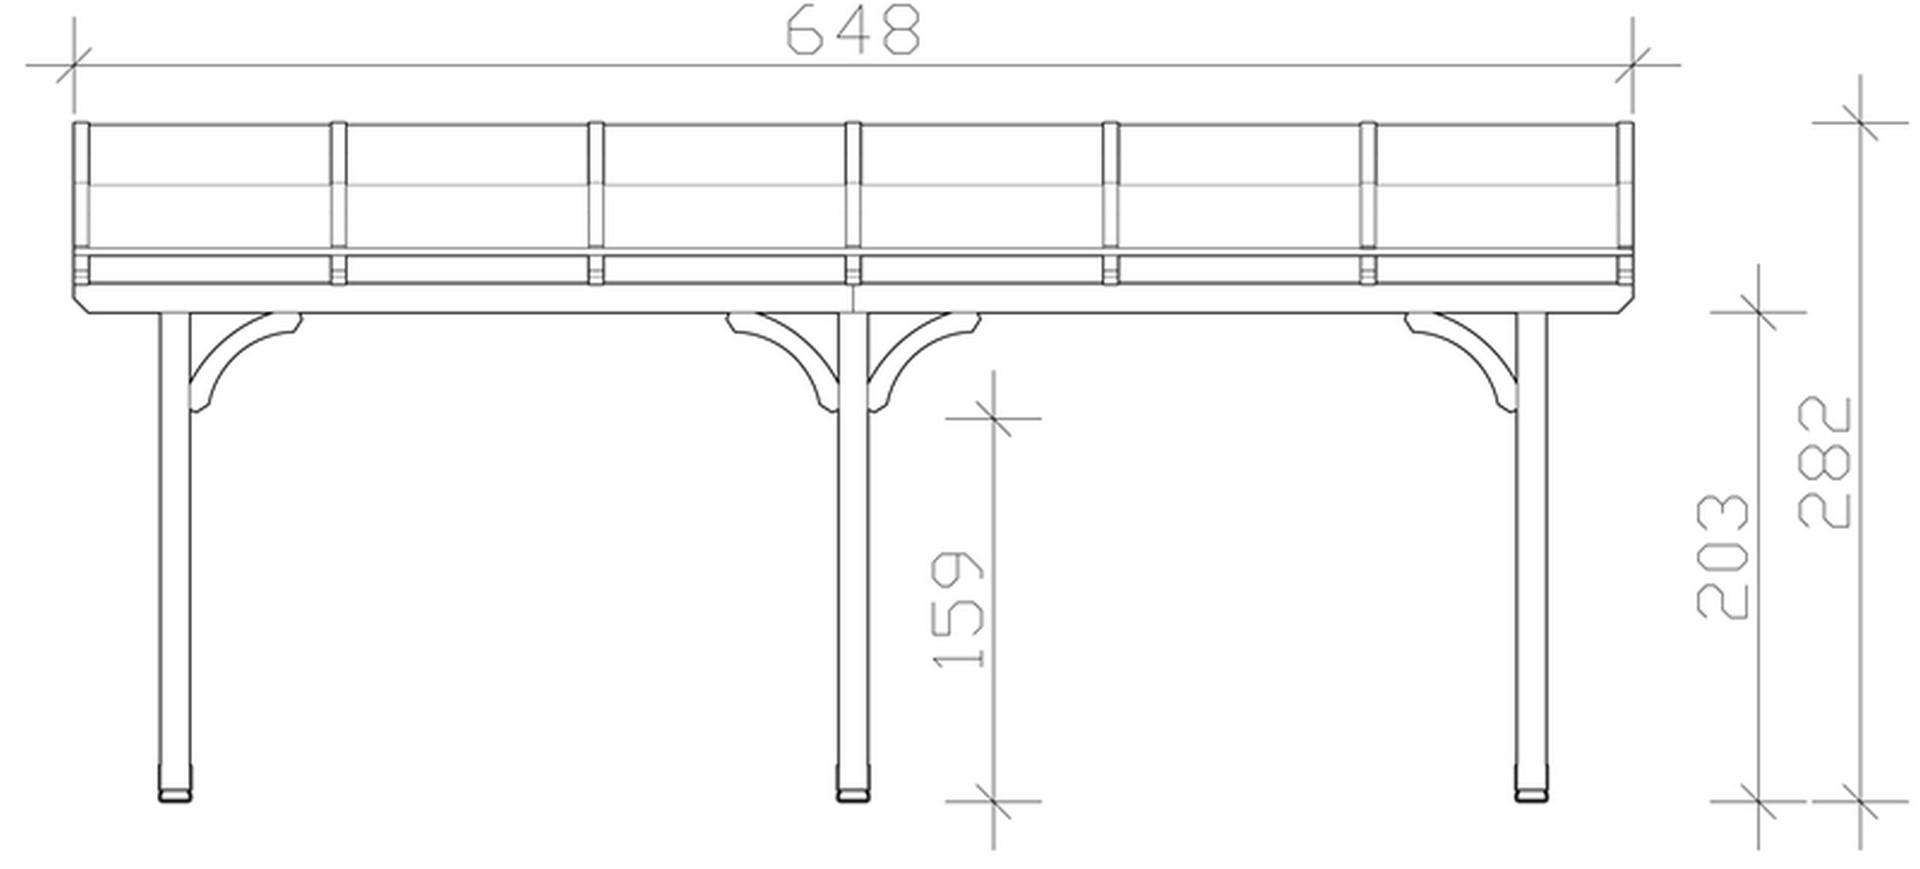 Skan Holz Terrassenüberdachung Venezia 648 x 239 cm, Leimholz, Doppelstegplatten